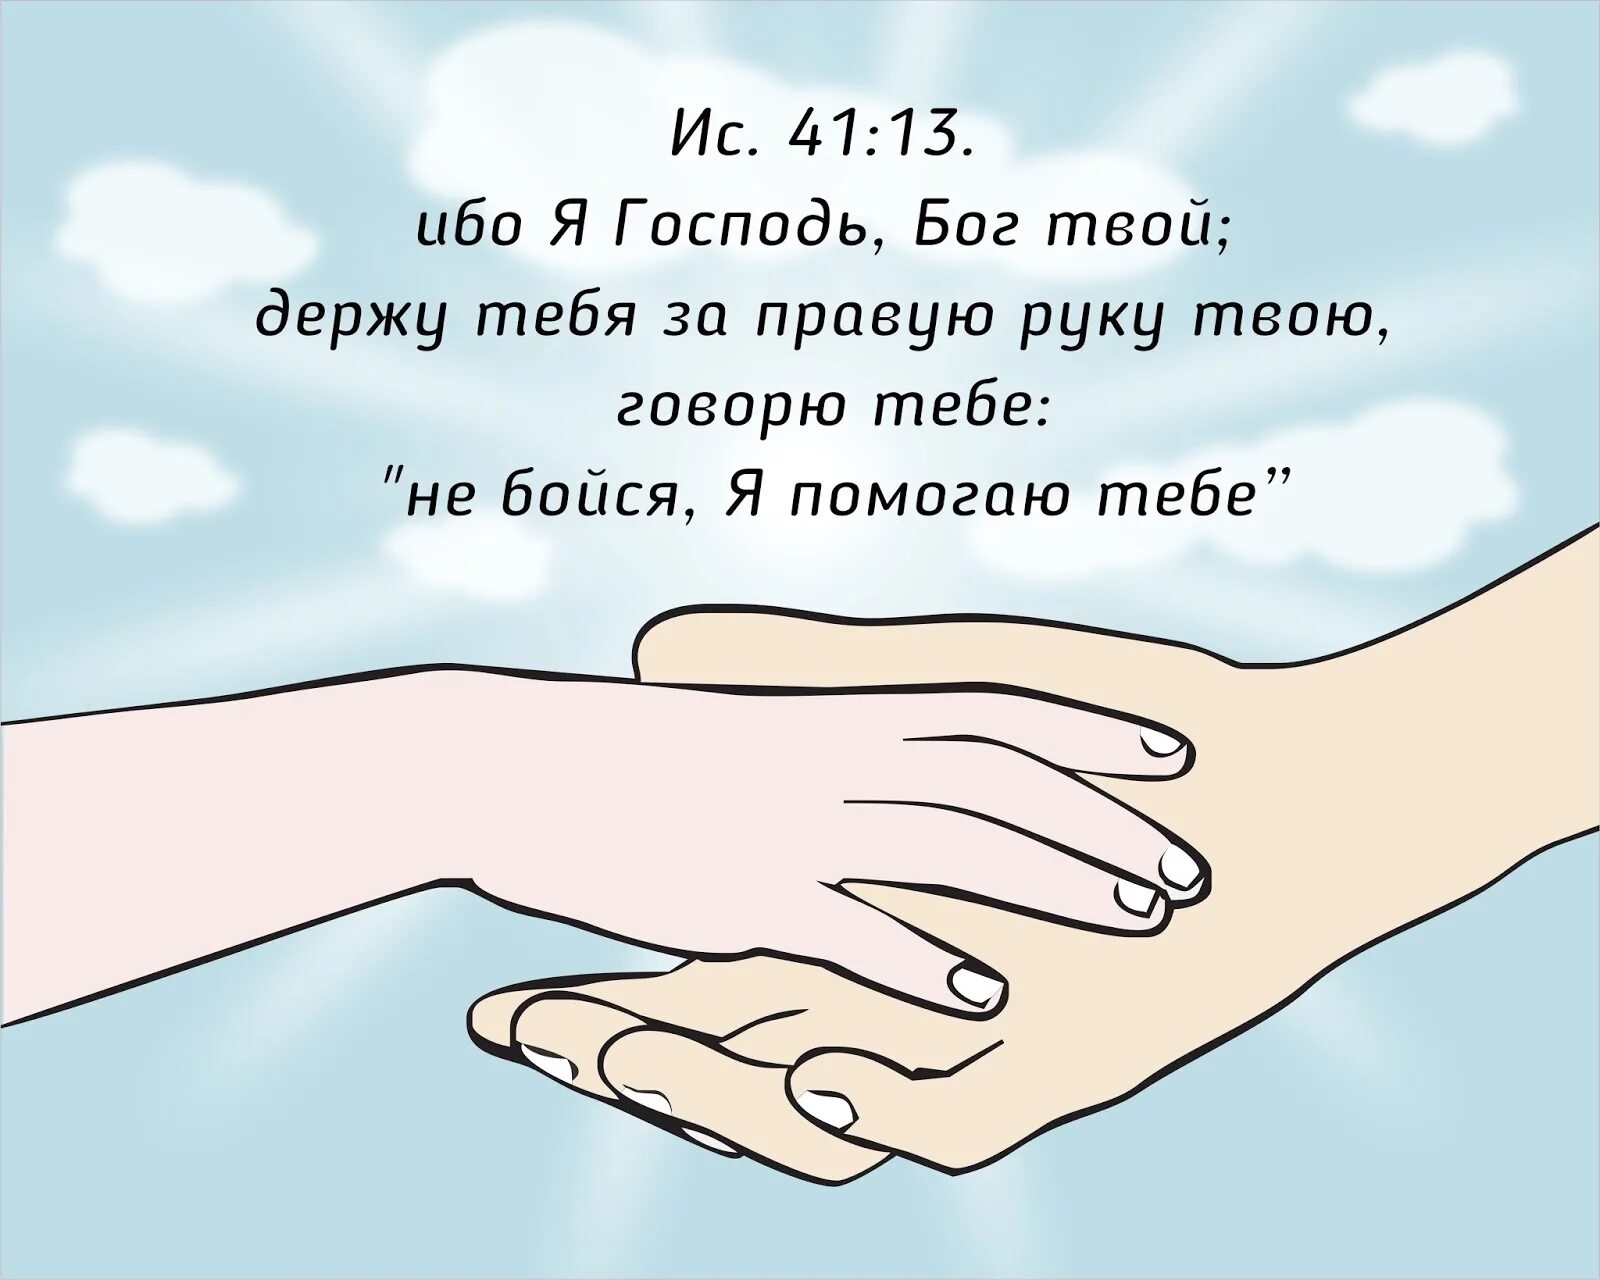 Я держу тебя за руку. Ибо я Господь Бог твой держу тебя за правую. Я Господь твой держу тебя за правую руку. Я держу тебя за правую руку говорю не бойся. Бог держит тебя за правую руку.